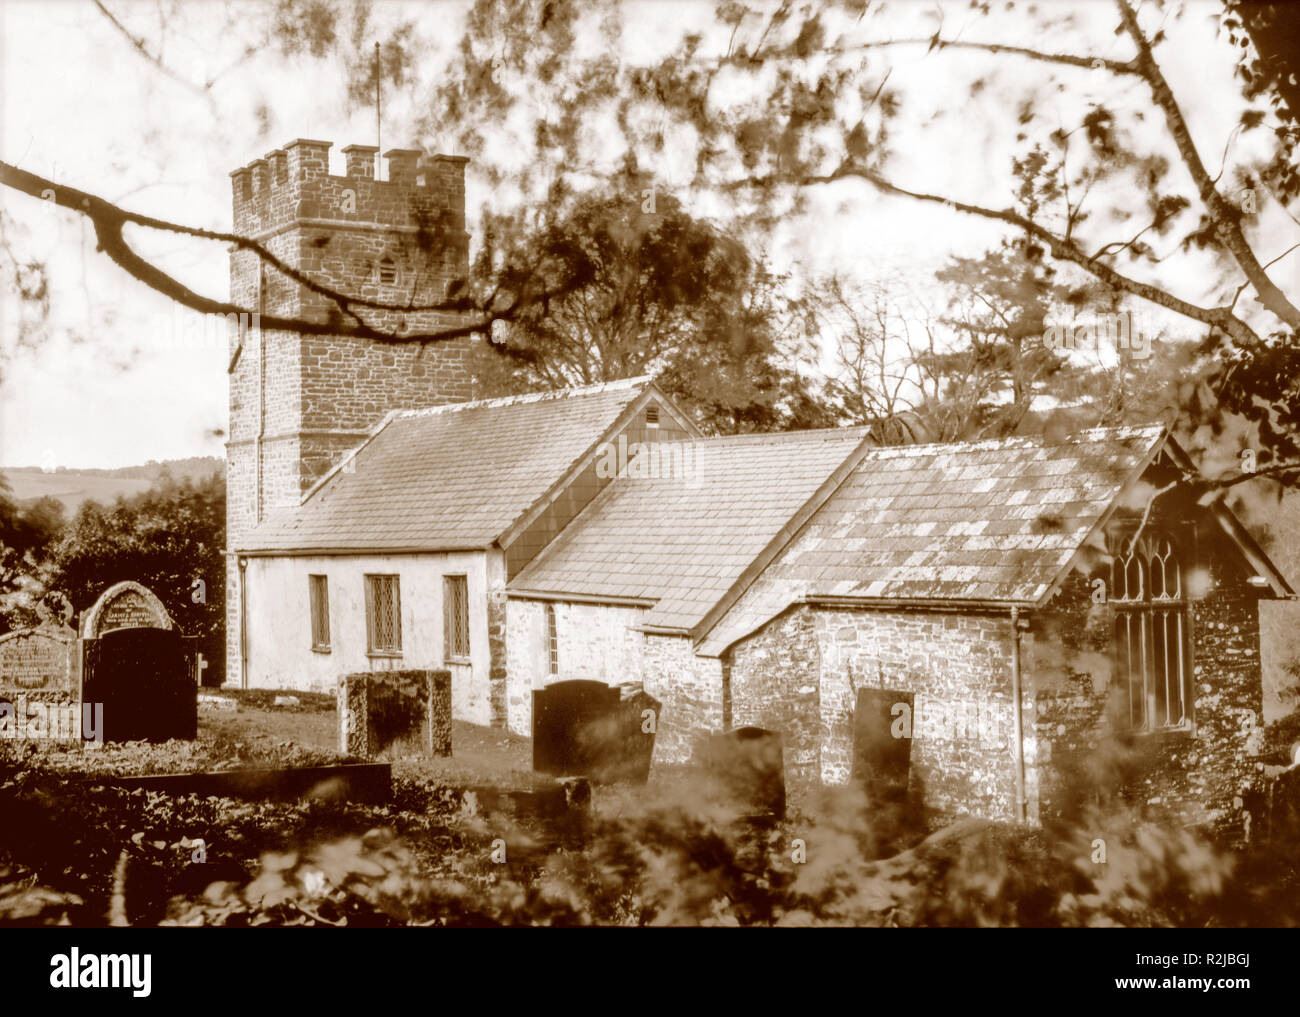 Sepiafarbene Fotografie, die im Oktober 2018 in einer 7 x 5-Zoll-Plattenkamera der Kirche St. Mary in Oare (berühmt in Lorna Doone) auf Papiernegativ aufgenommen wurde. Stockfoto